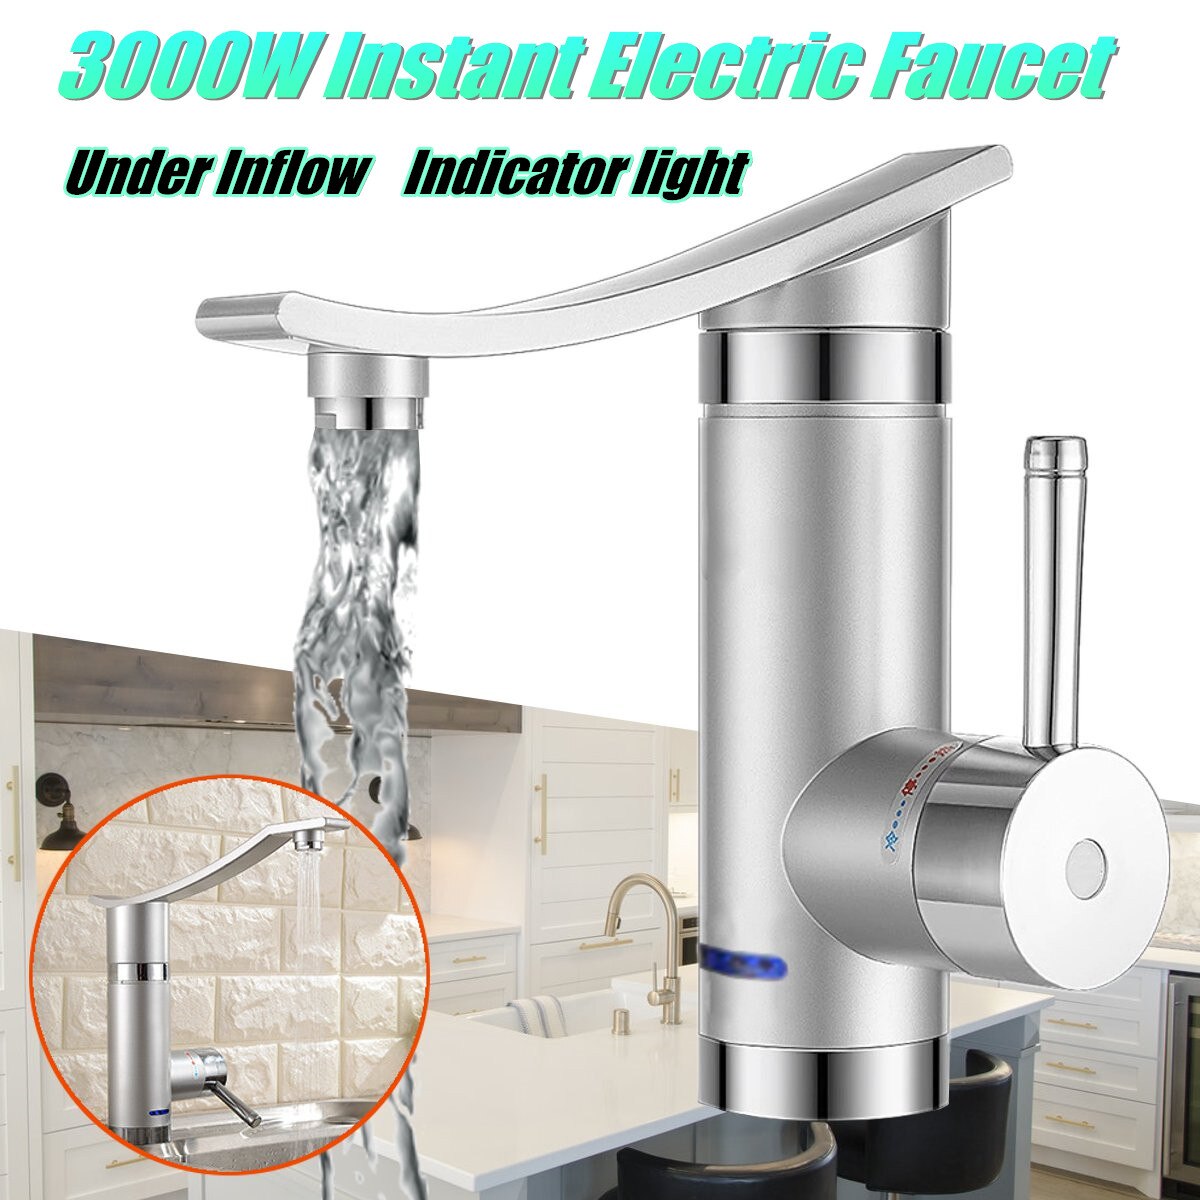 Hjem 3000w instant elektrisk vandhane vand elektriske vandvarmere under indstrømning/sidevand uden lækagesikring